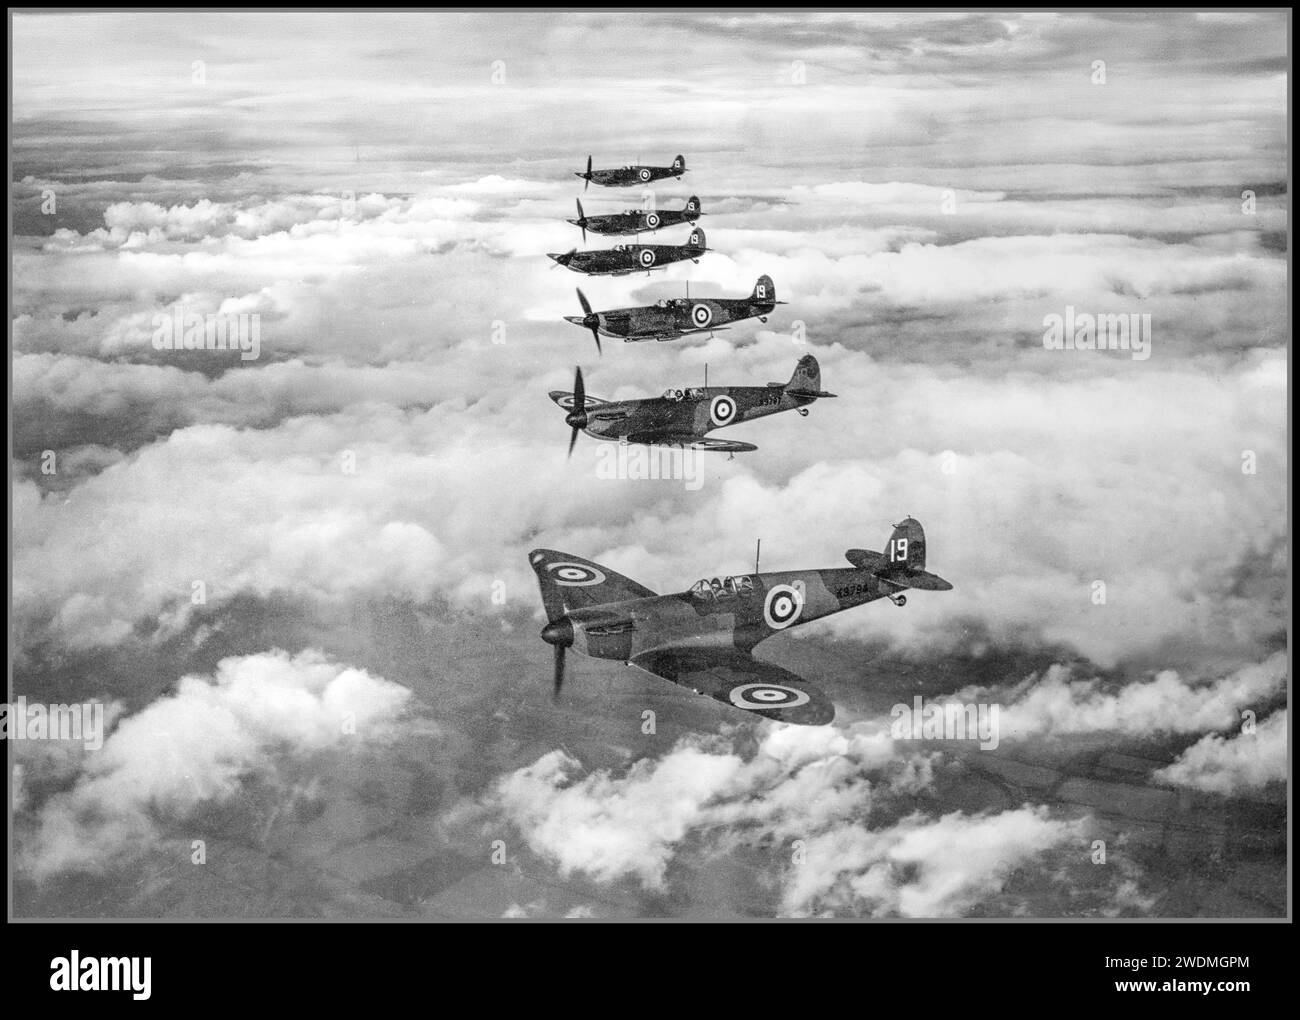 BATAILLE D'ANGLETERRE 1939 WW2 Spitfire avion de chasse Spitfires volant en formation à partir du 19e escadron, basé à Duxford à Cambs, volant en formation échelon. Bataille d'Angleterre , RAF Fighter Command. Douglas Bader est affecté à l'escadron en février 1940. En mai et juin 1940, l'escadron fournit une couverture aérienne sur les plages de Dunkerque lors des évacuations de troupes pendant la Seconde Guerre mondiale Banque D'Images